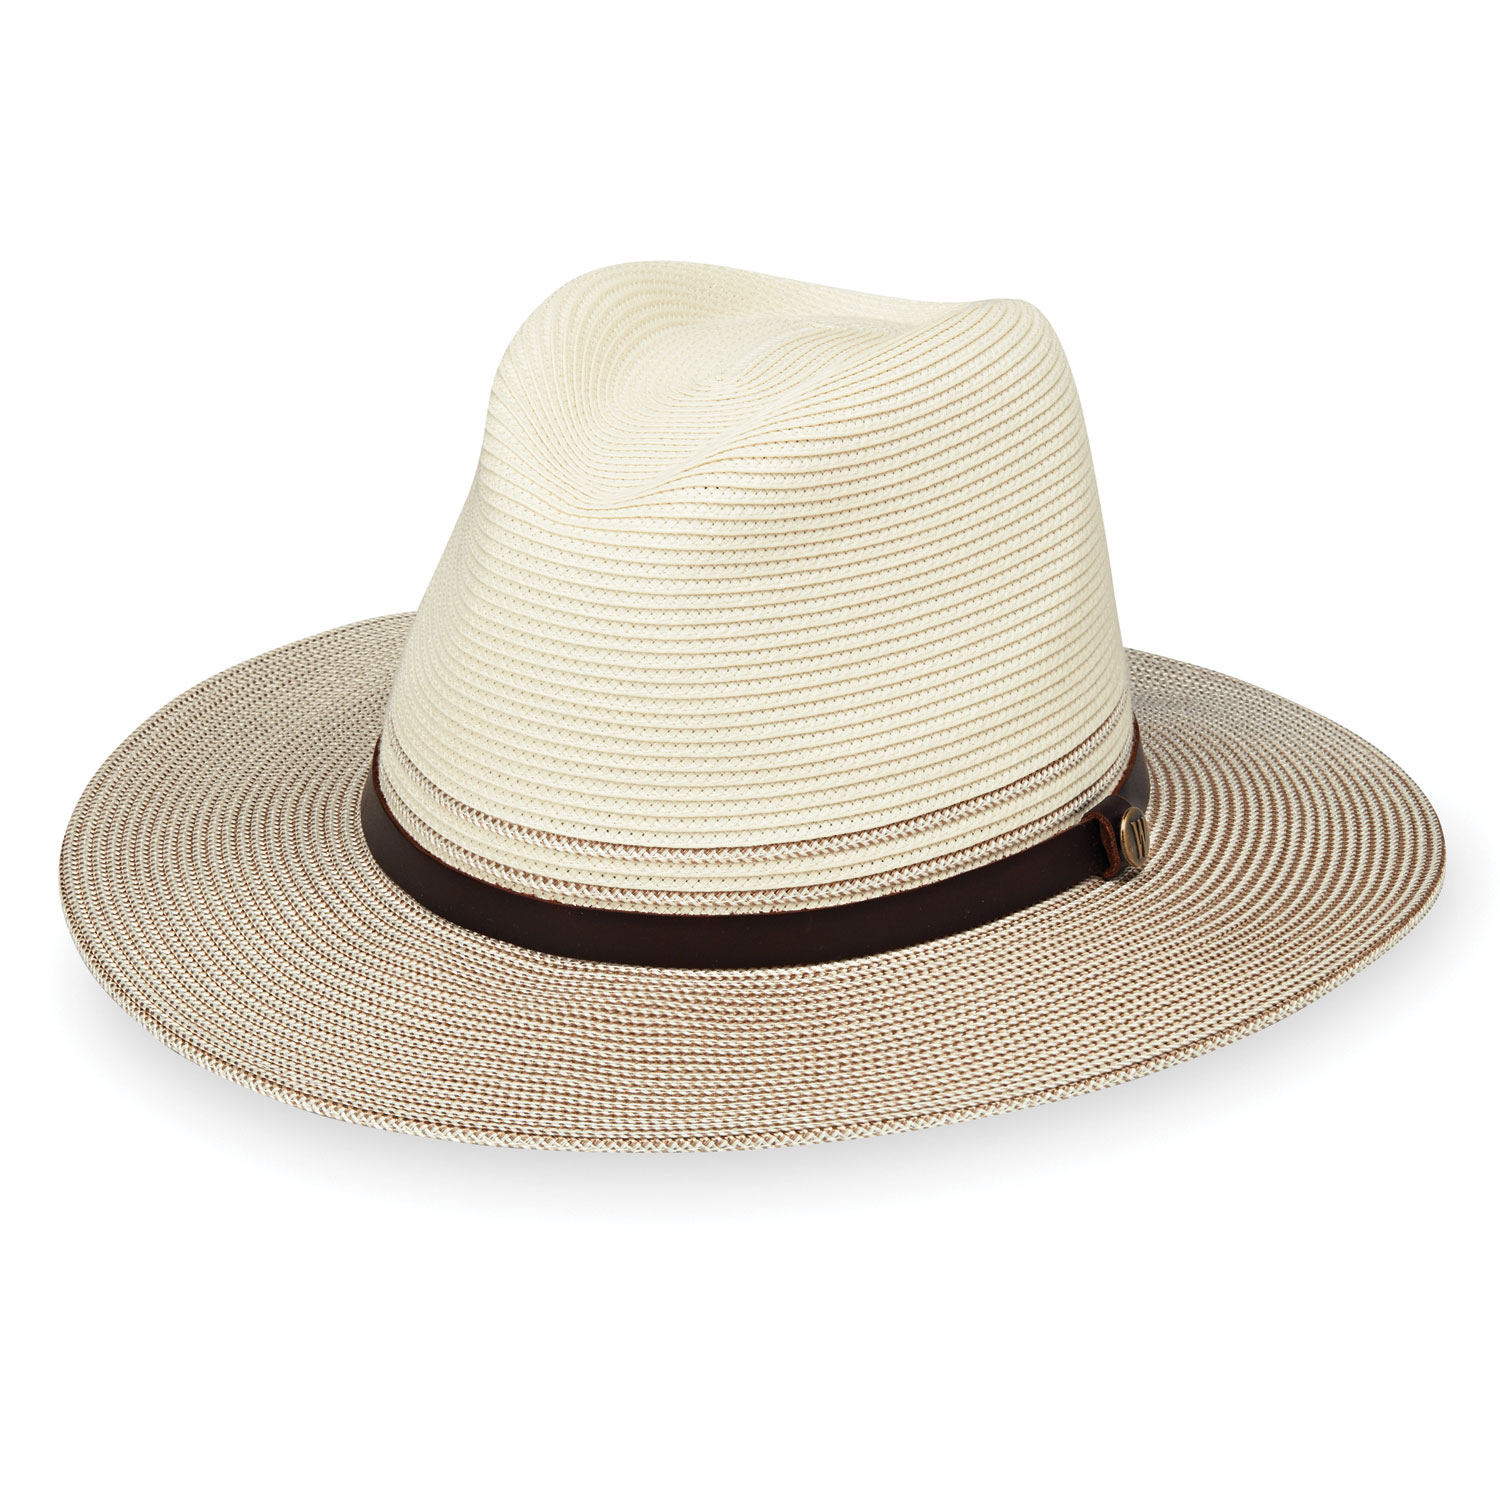 Dallfoll Sombrero para Sol Protección UV UPF 50+, Sombrero de